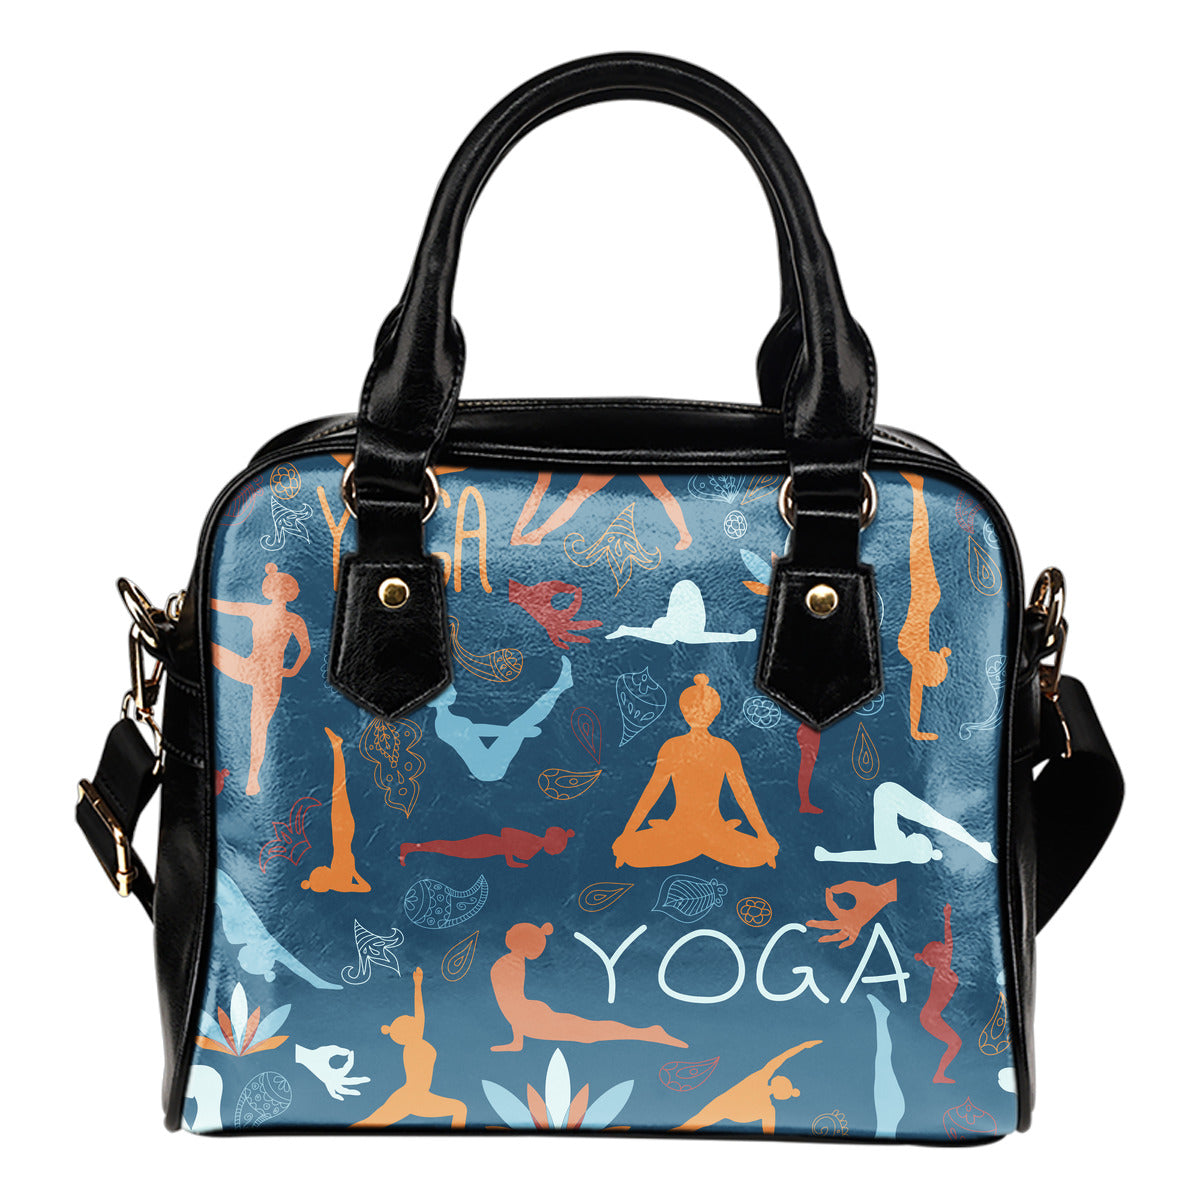 Yoga Lover Handbag